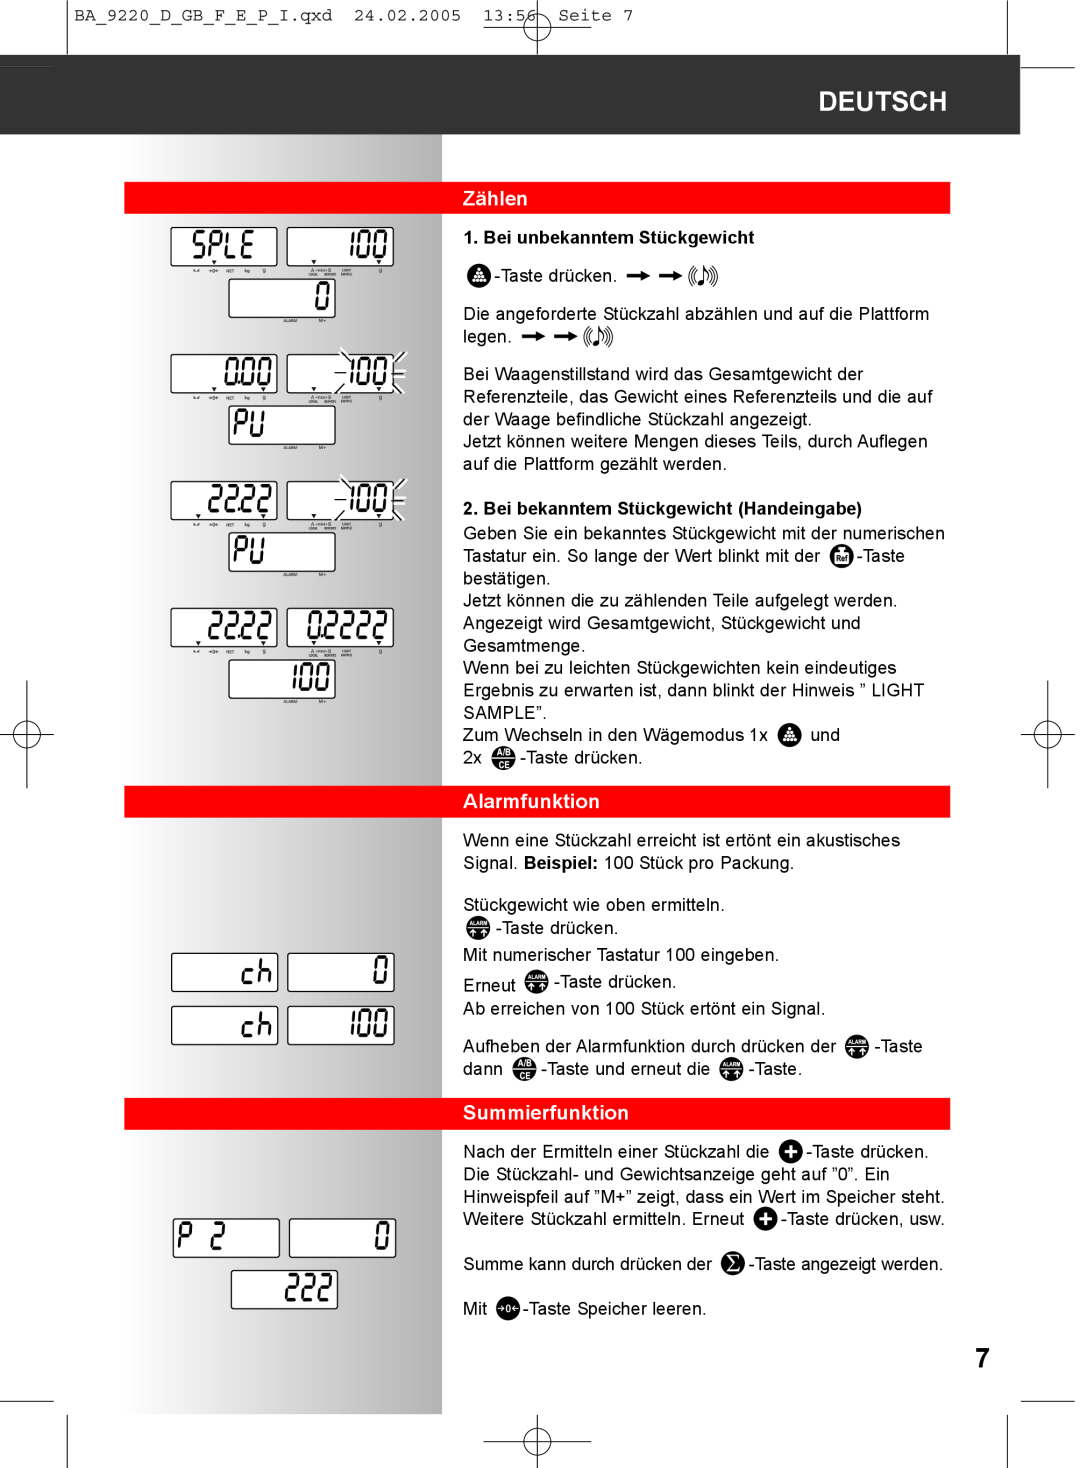 Soehnle 9220 manual Zählen, Alarmfunktion, Summierfunktion, Deutsch, Bei unbekanntem Stückgewicht 